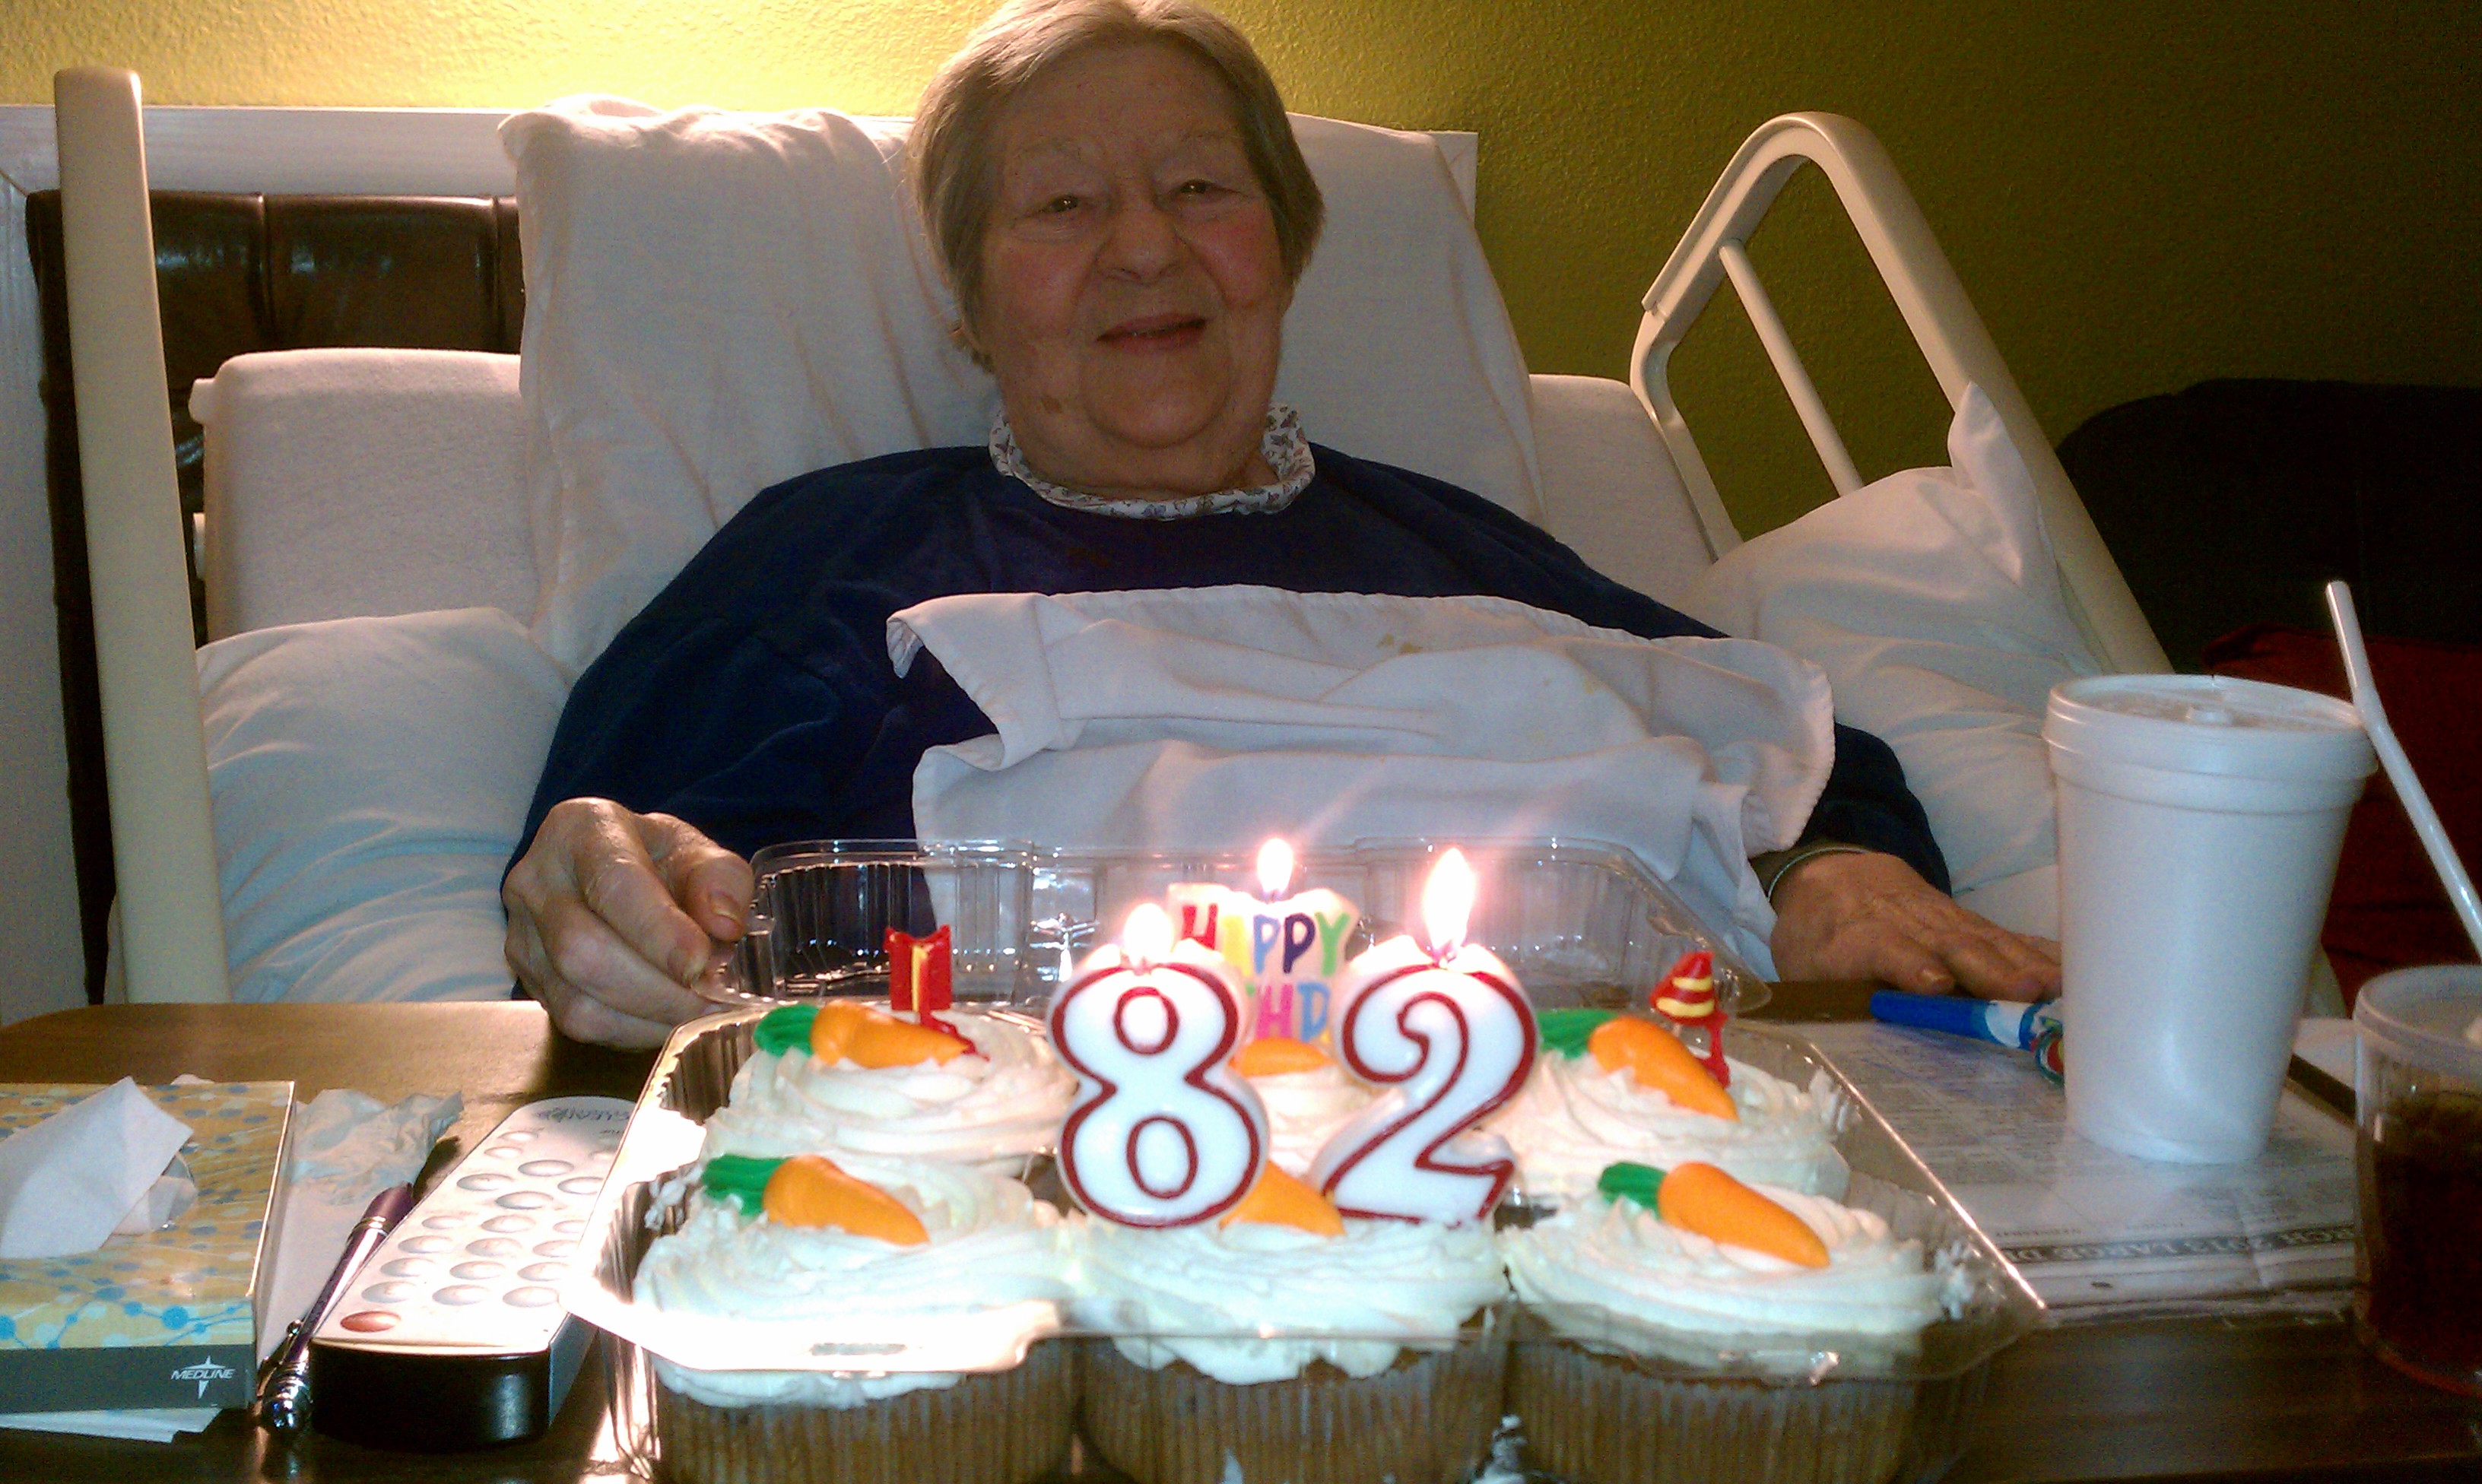 March 11, 2013: Geraldine Decker celebrates her 82nd birthday.